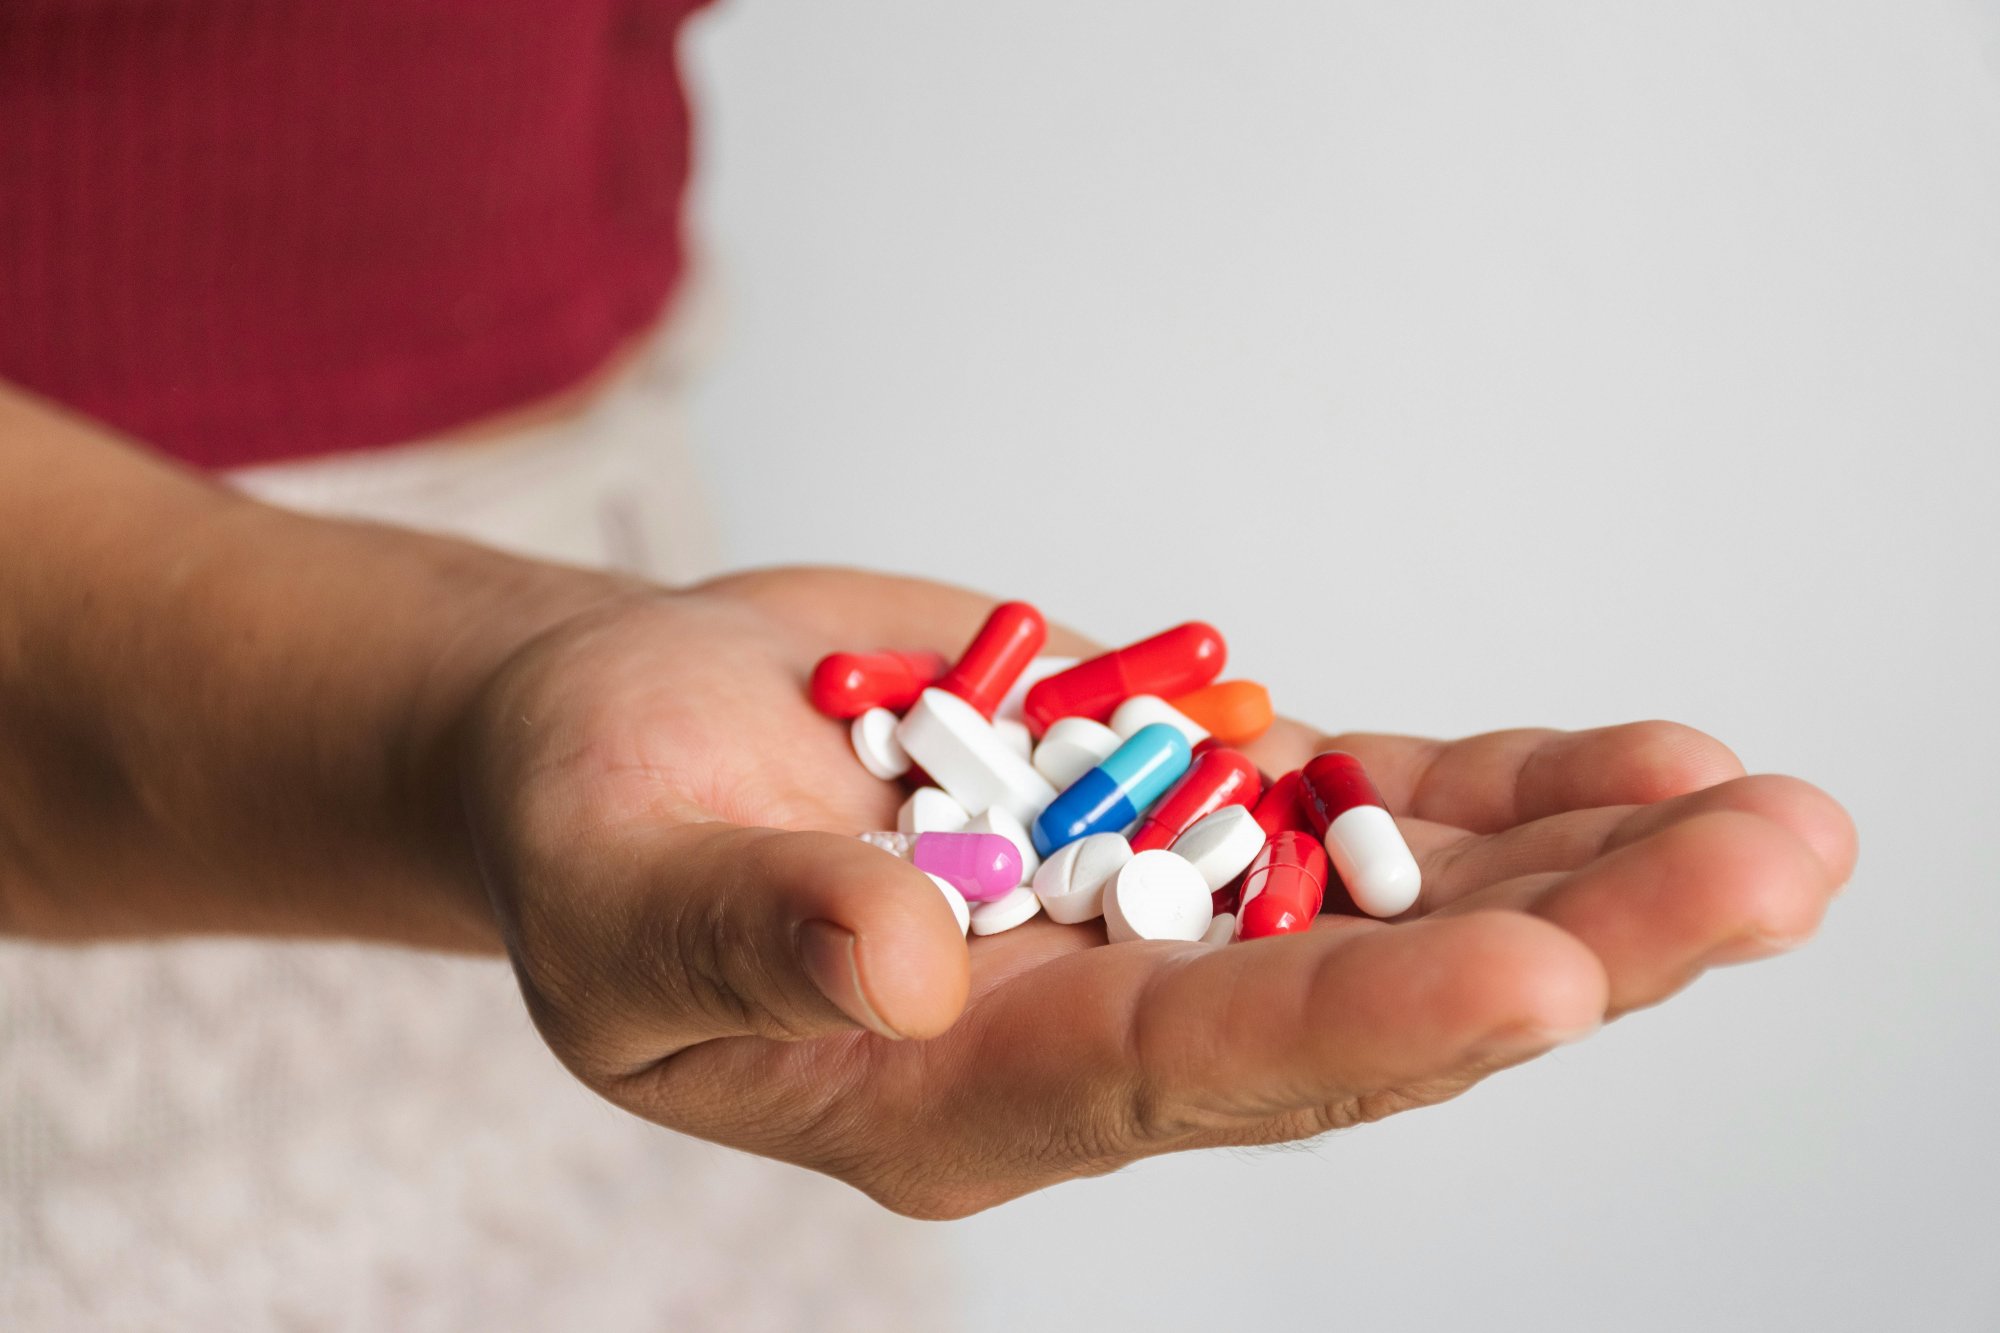 Πολυβιταμίνες: Μεγάλη μελέτη δεν βλέπει μείωση στον κίνδυνο πρόωρου θανάτου